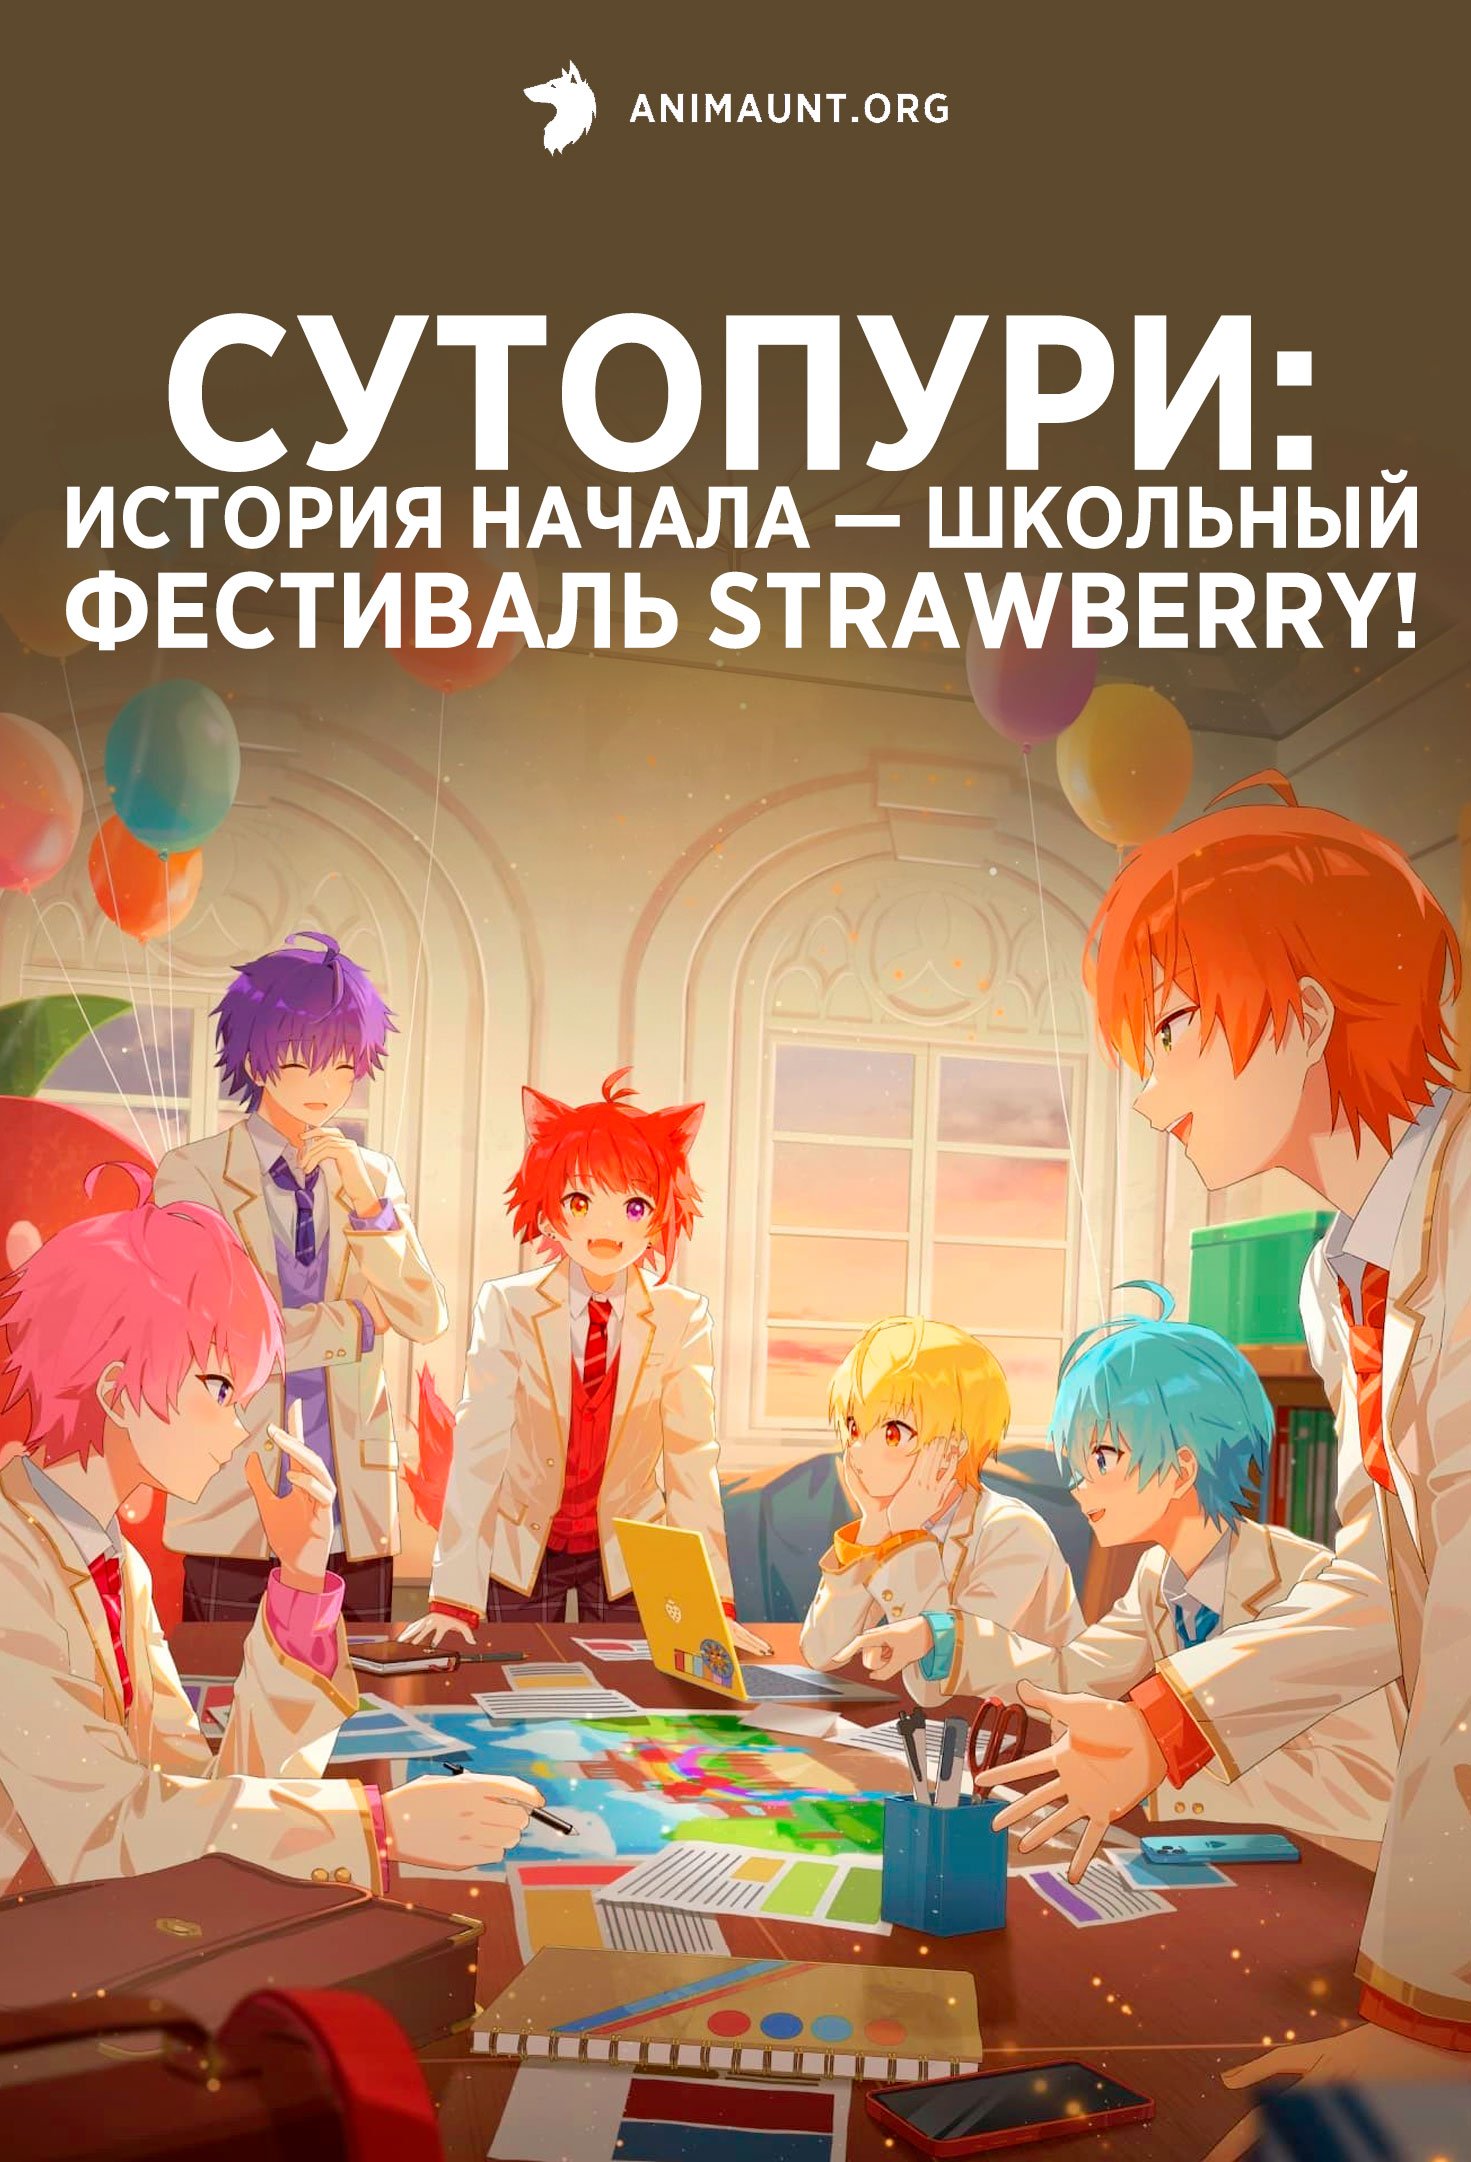 СутоПури: История начала — Школьный фестиваль Strawberry!